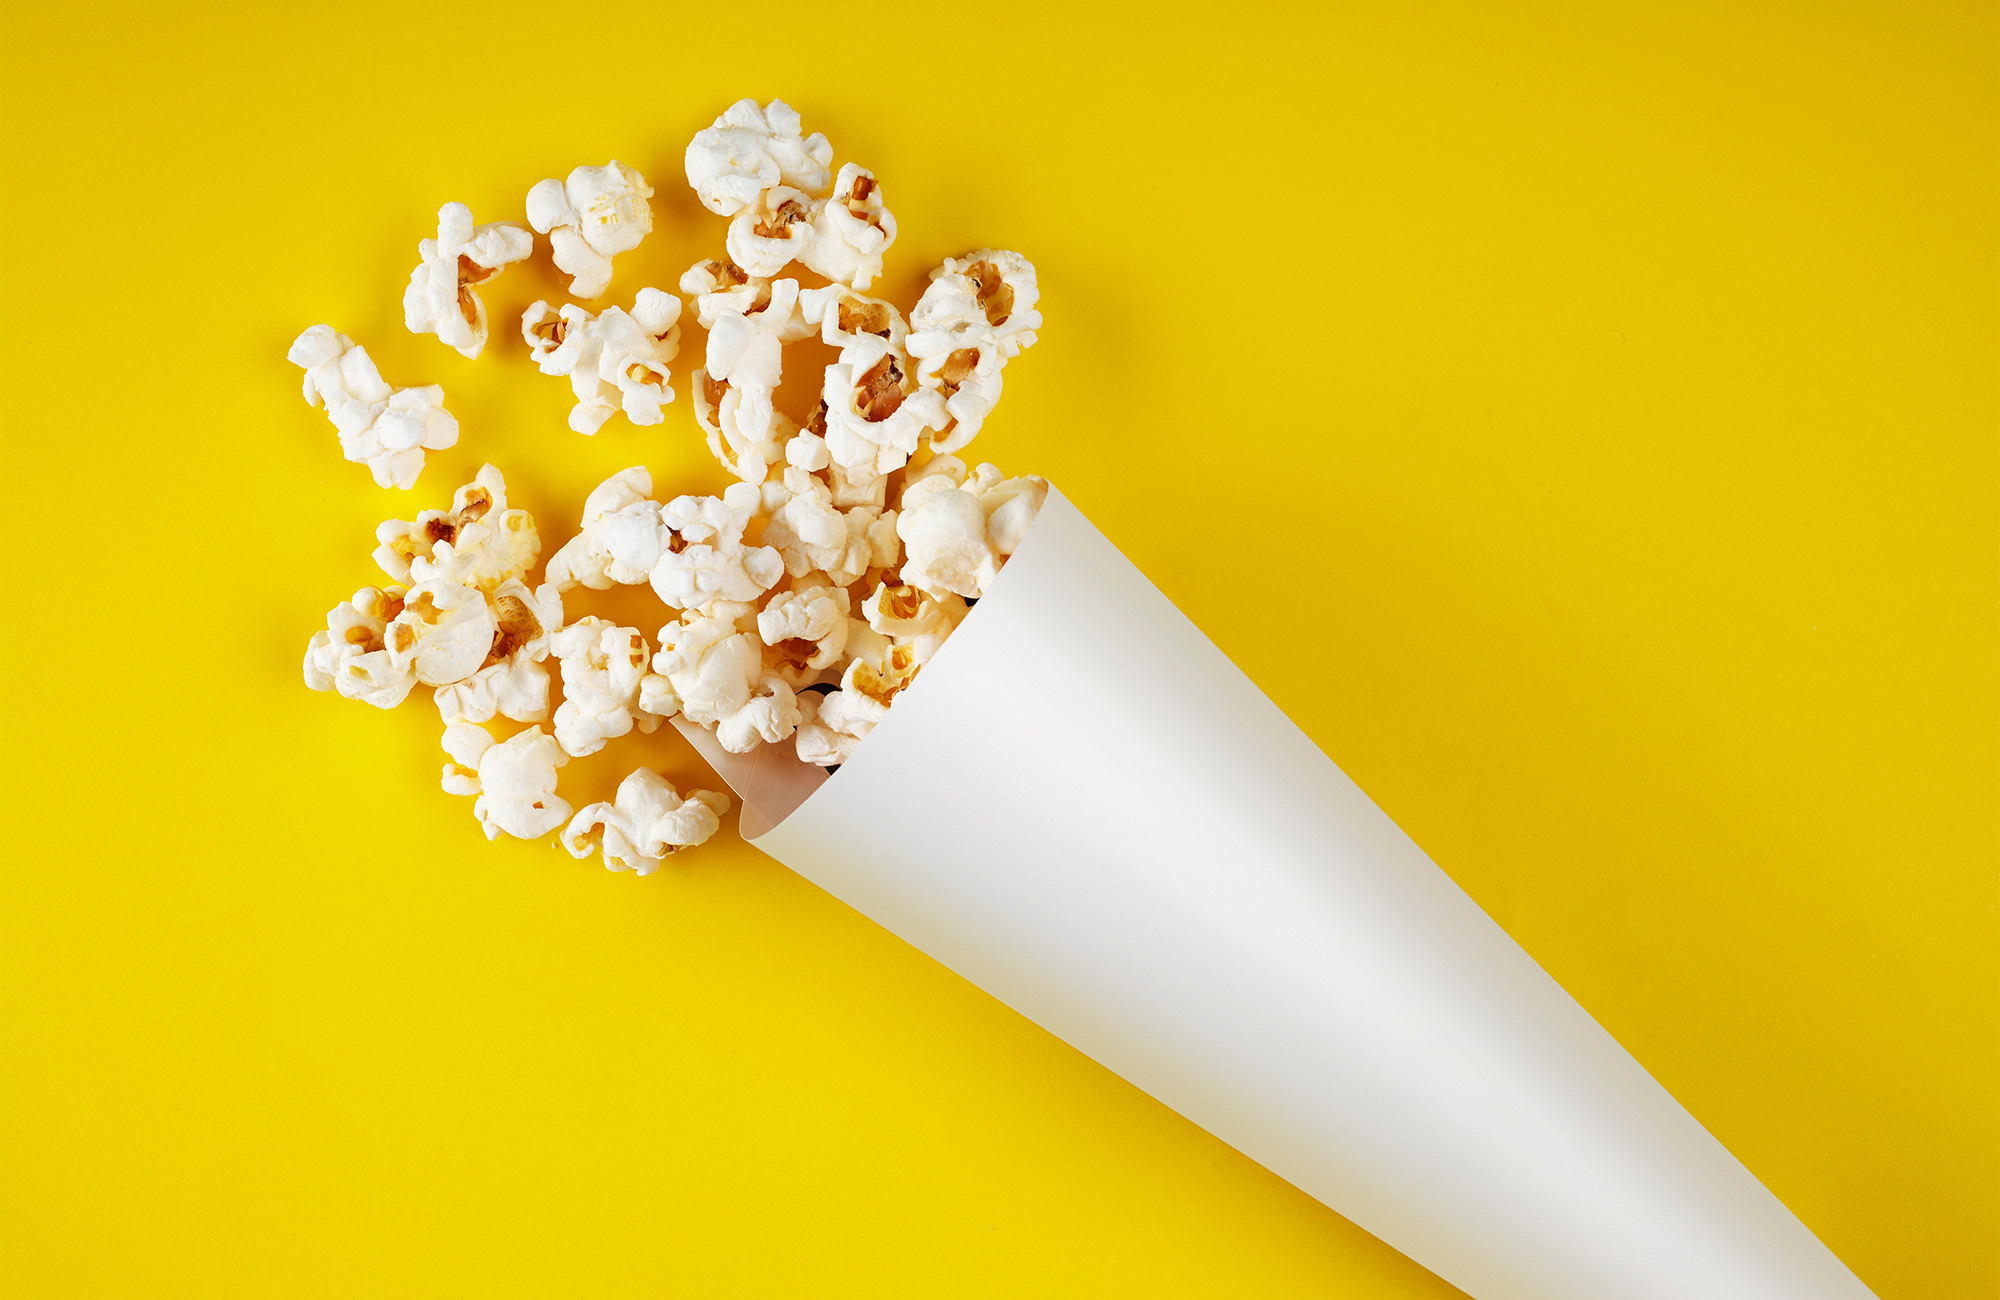 Popcorn ist das klassische Essen für Cineasten. Nun wird es vermehrt auf der heimischen Couch verzehrt.